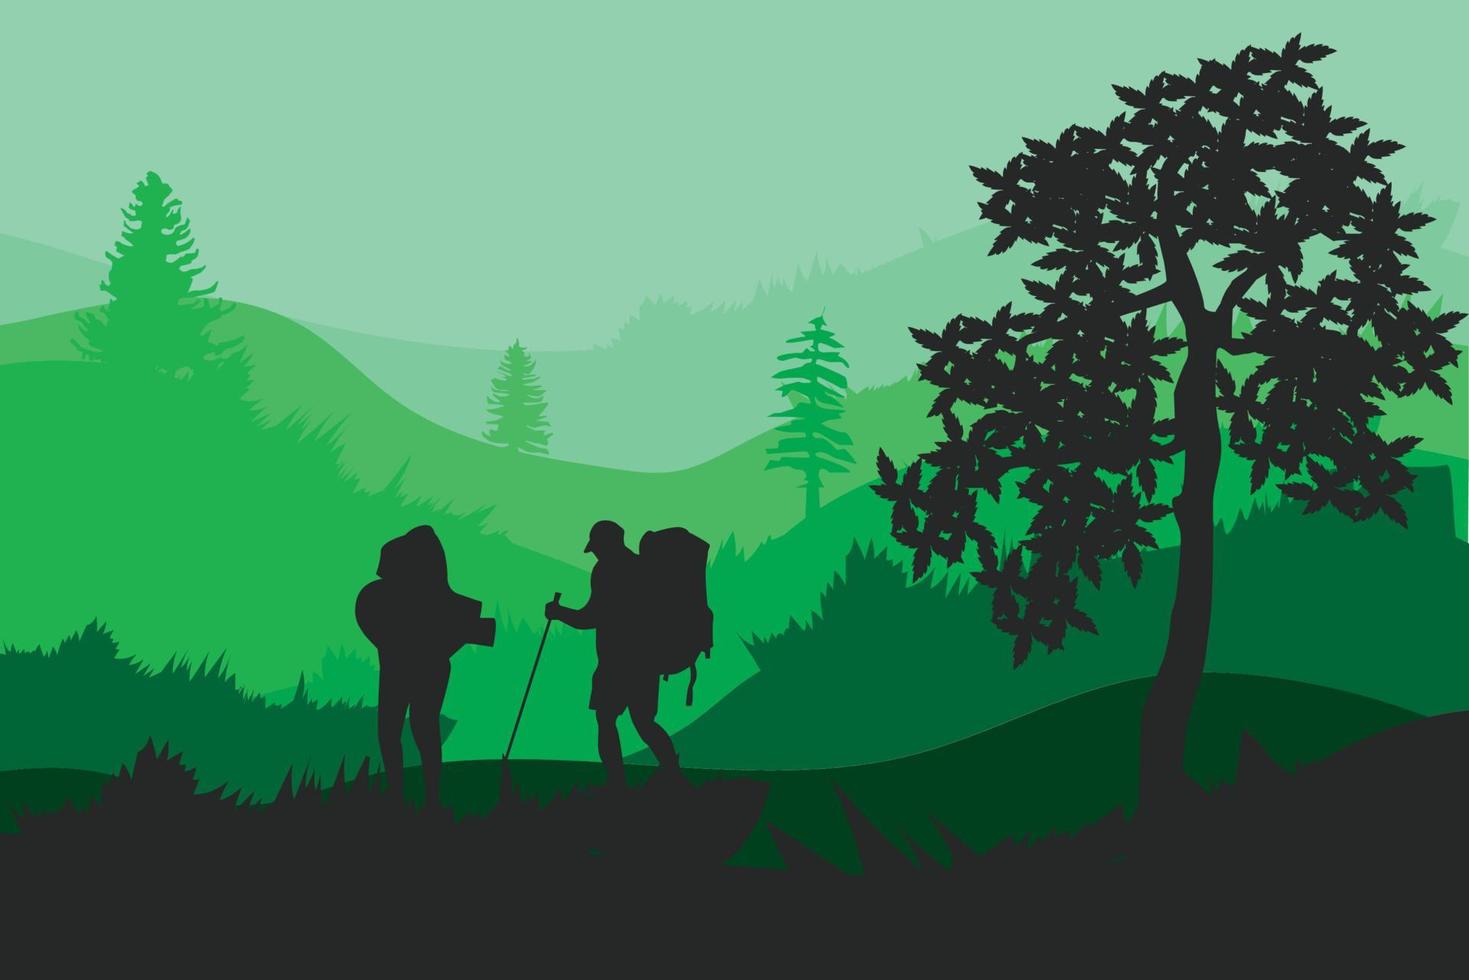 1 excursionista de equipo, mochilero, turistas parados en un paisaje montañoso con bosque bajo el cielo del atardecer, con nubes y pájaros voladores, árbol vector